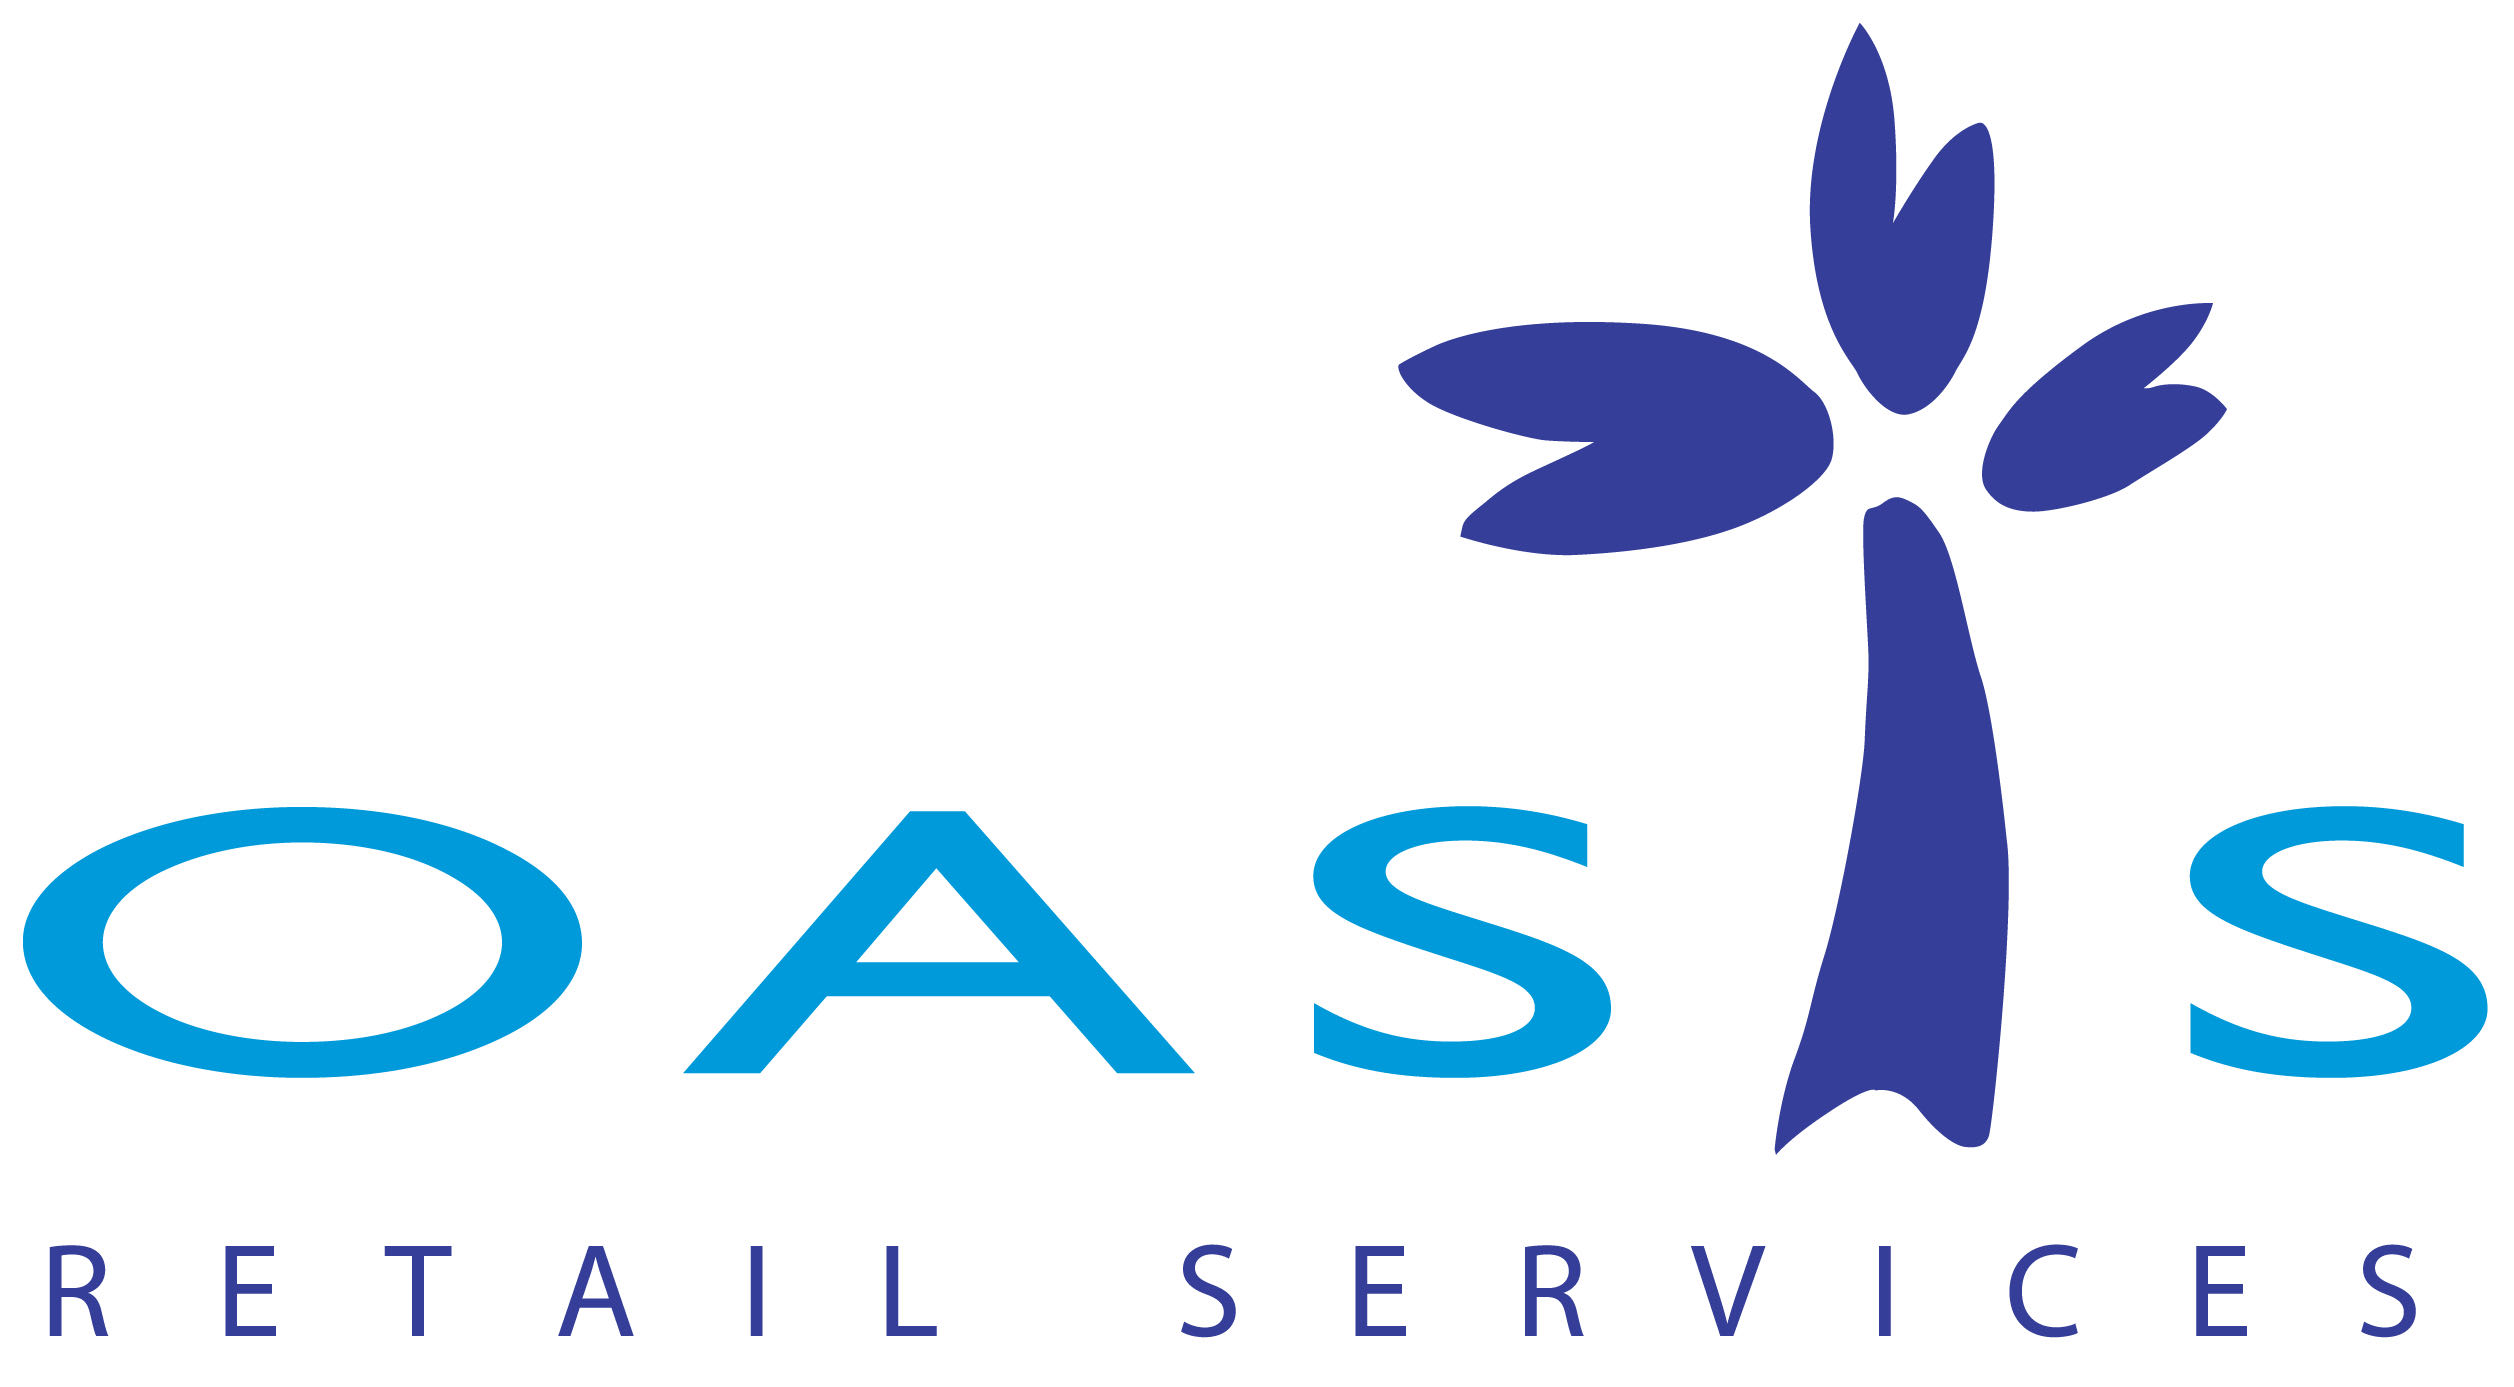 oasis-retail-services-logo.jpg